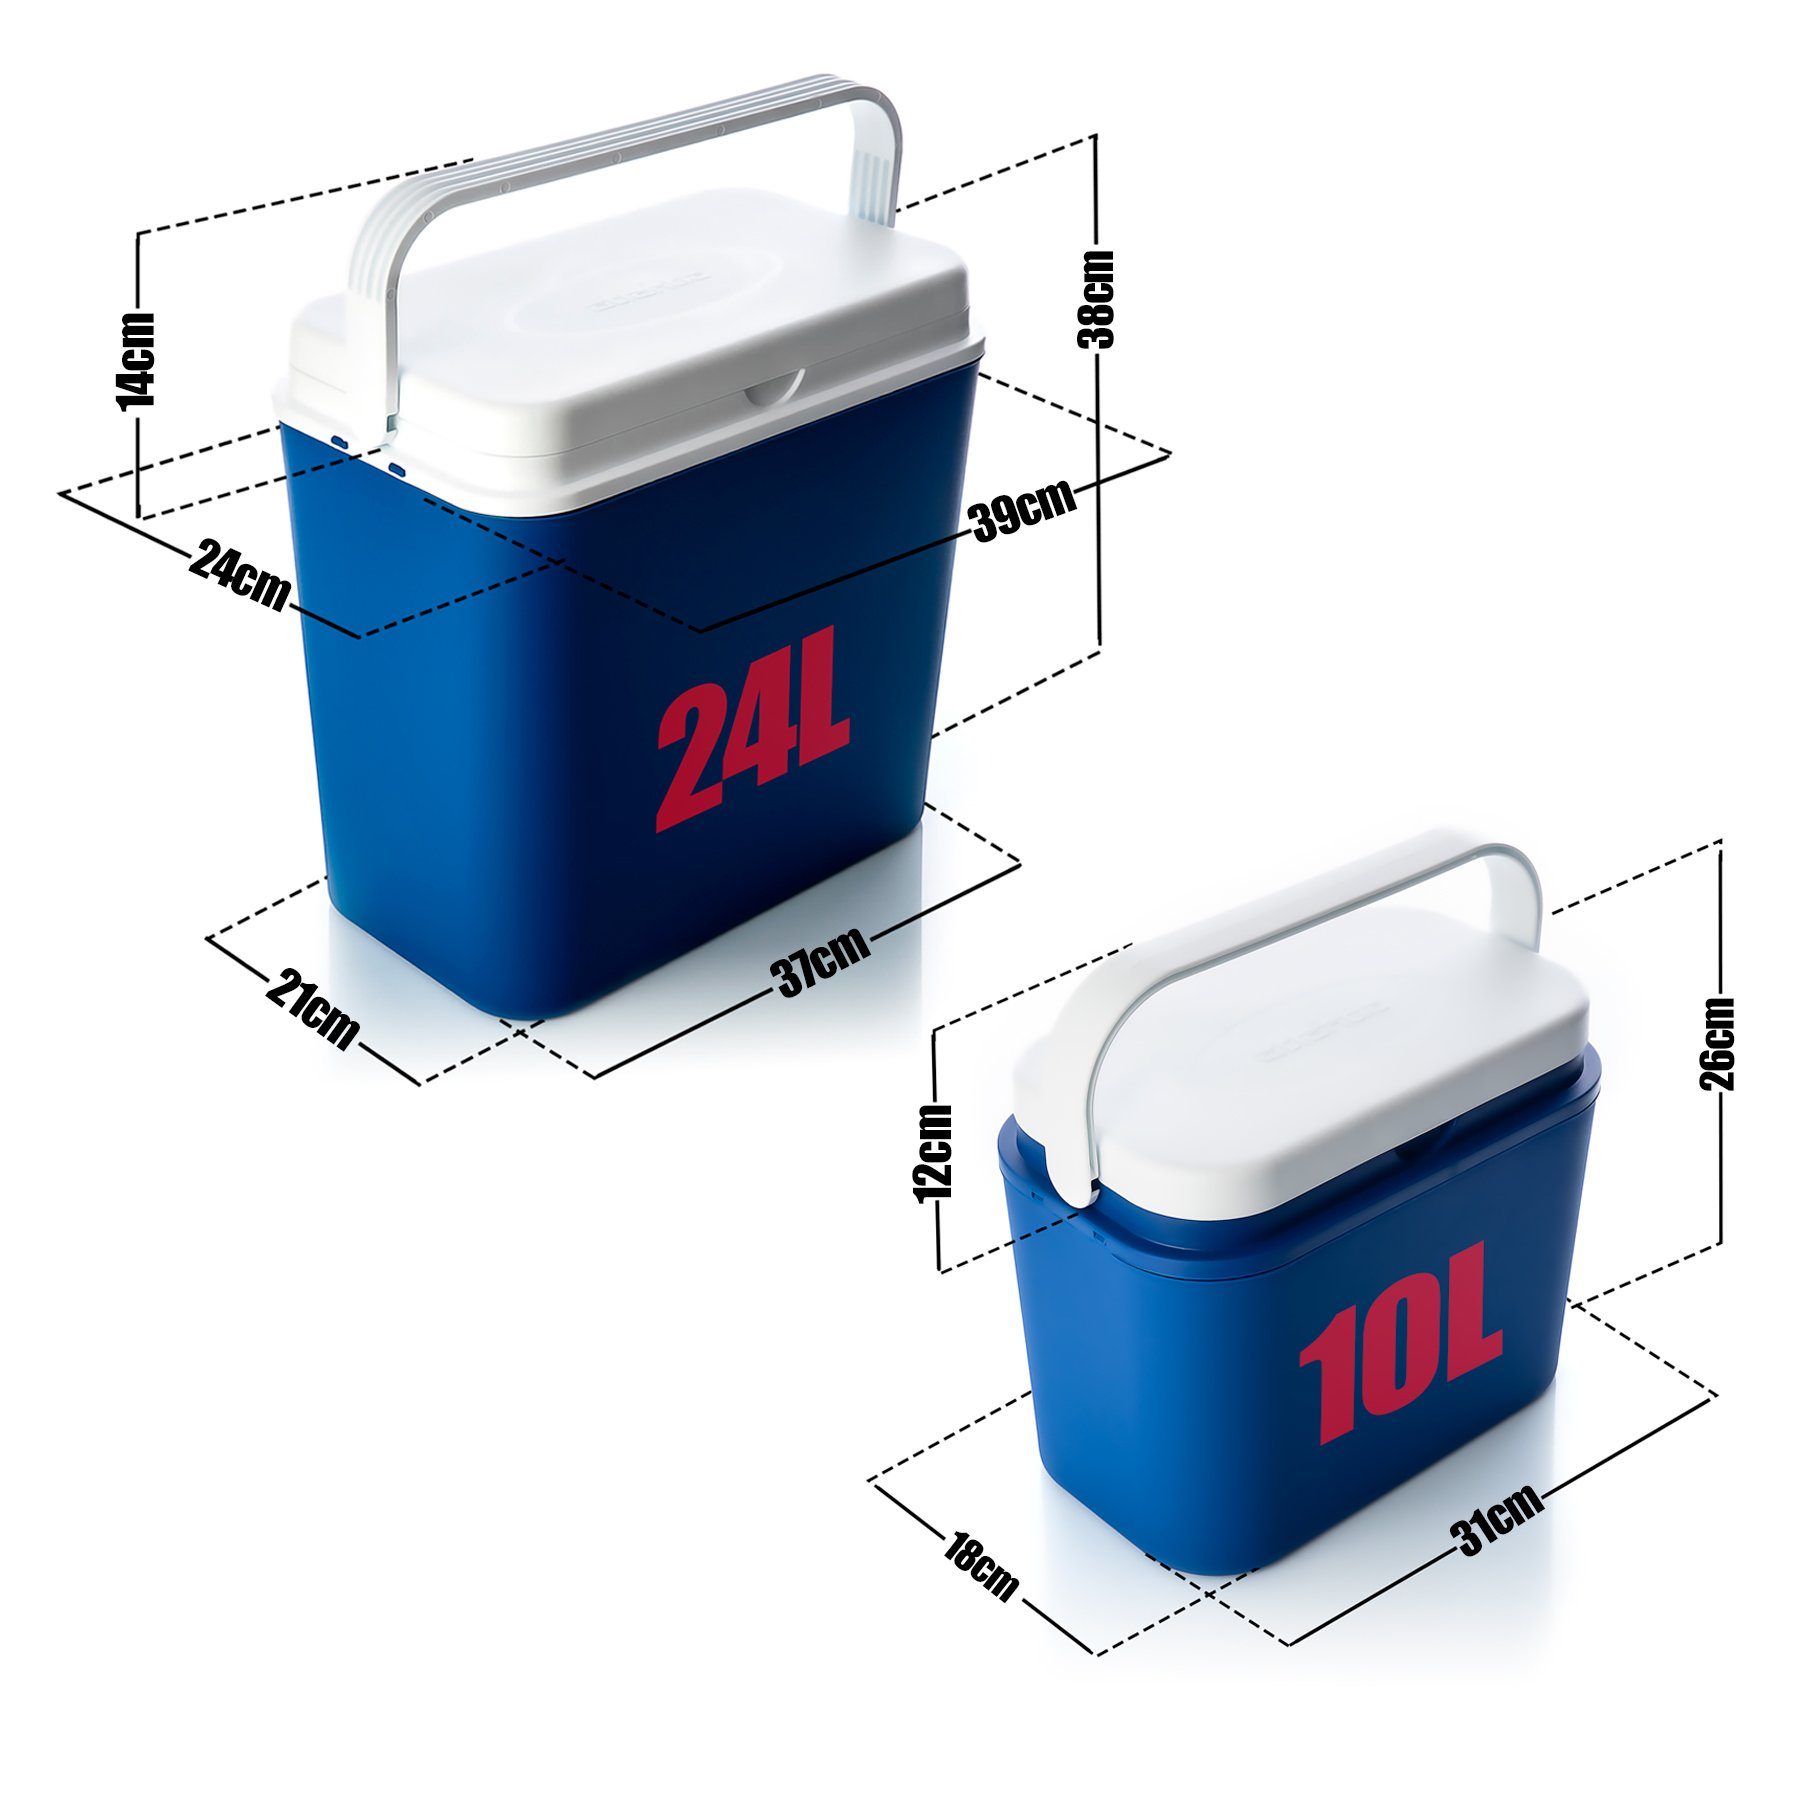 Kühlboxen Set 24L PP-Kunststoff, + (2-tlg) BigDean Made Thermobehälter in 10L EU, Blau/weiß Gefrierbox Kühltasche